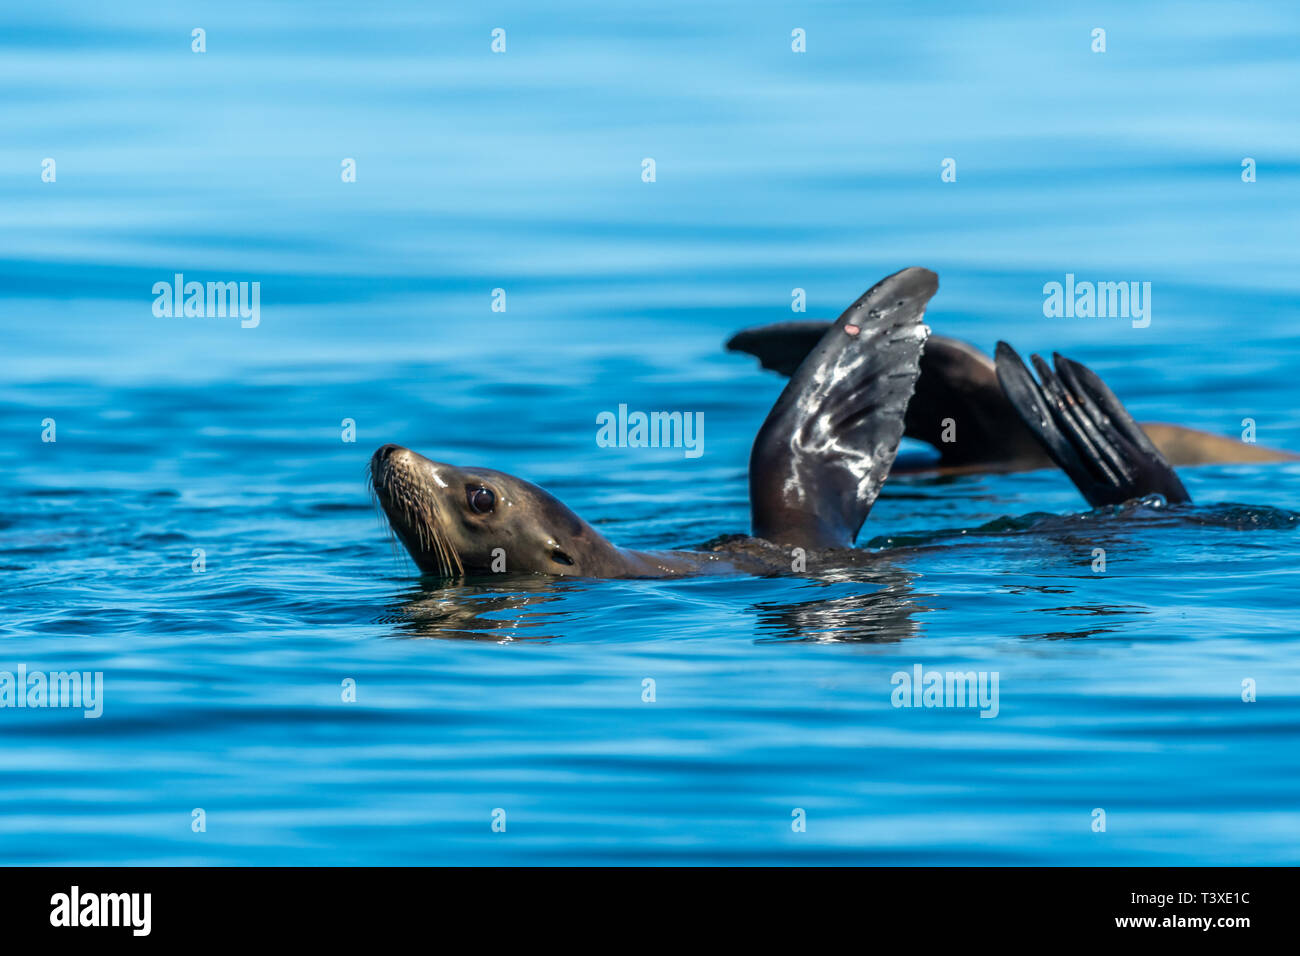 Kalifornische Seelöwen (zalophus californianus) thermalregulating durch ihre brustflossen Holding aus dem Wasser. Baja California. Stockfoto